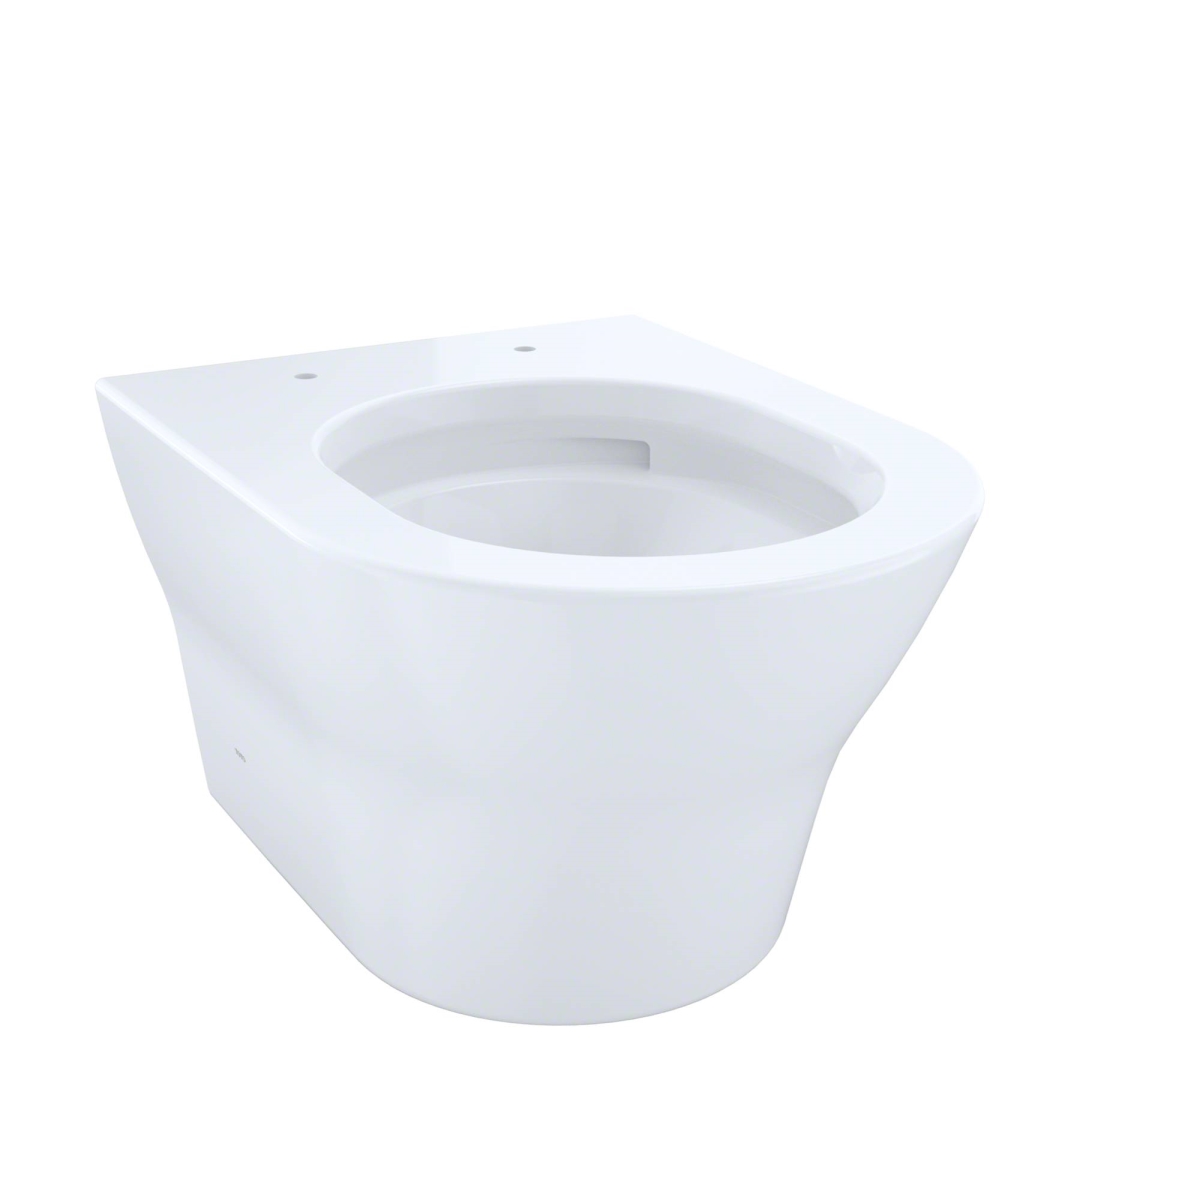 Ct437fg-01 Toilet Bowl, Cotton White